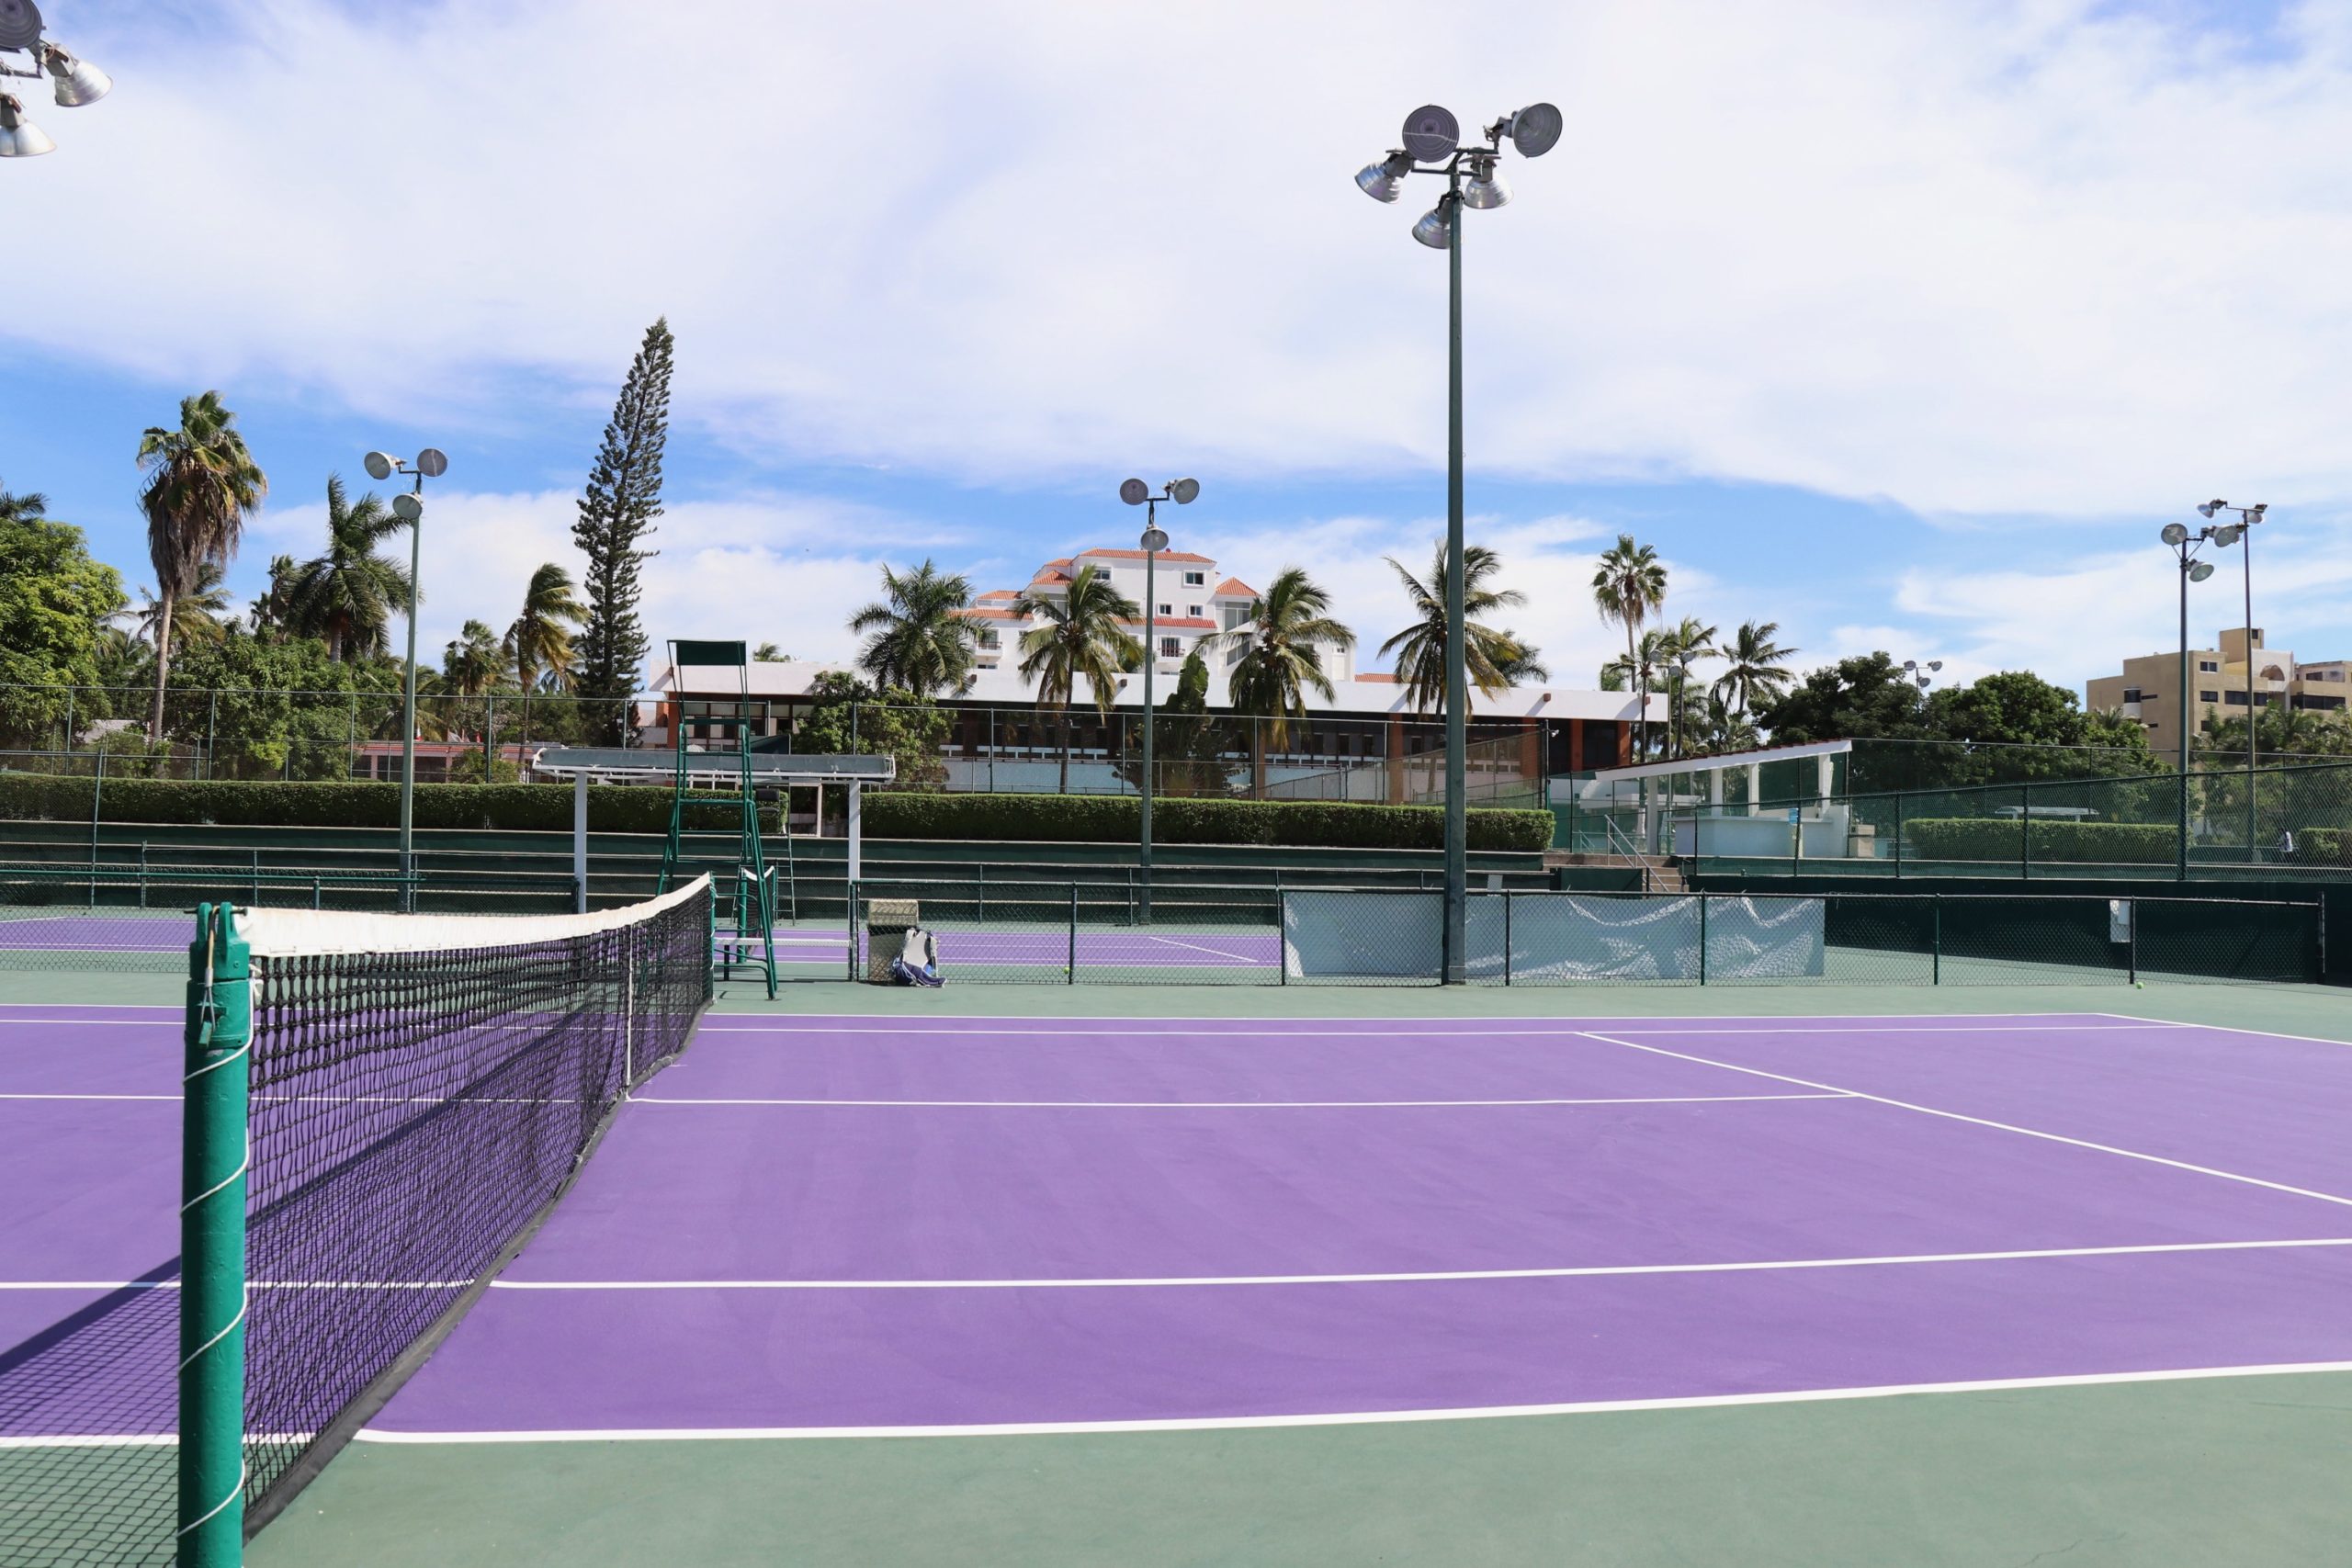 Tennis in Mazatlan Mexico- The El Cid Tennis Club - The Tennis Tourist